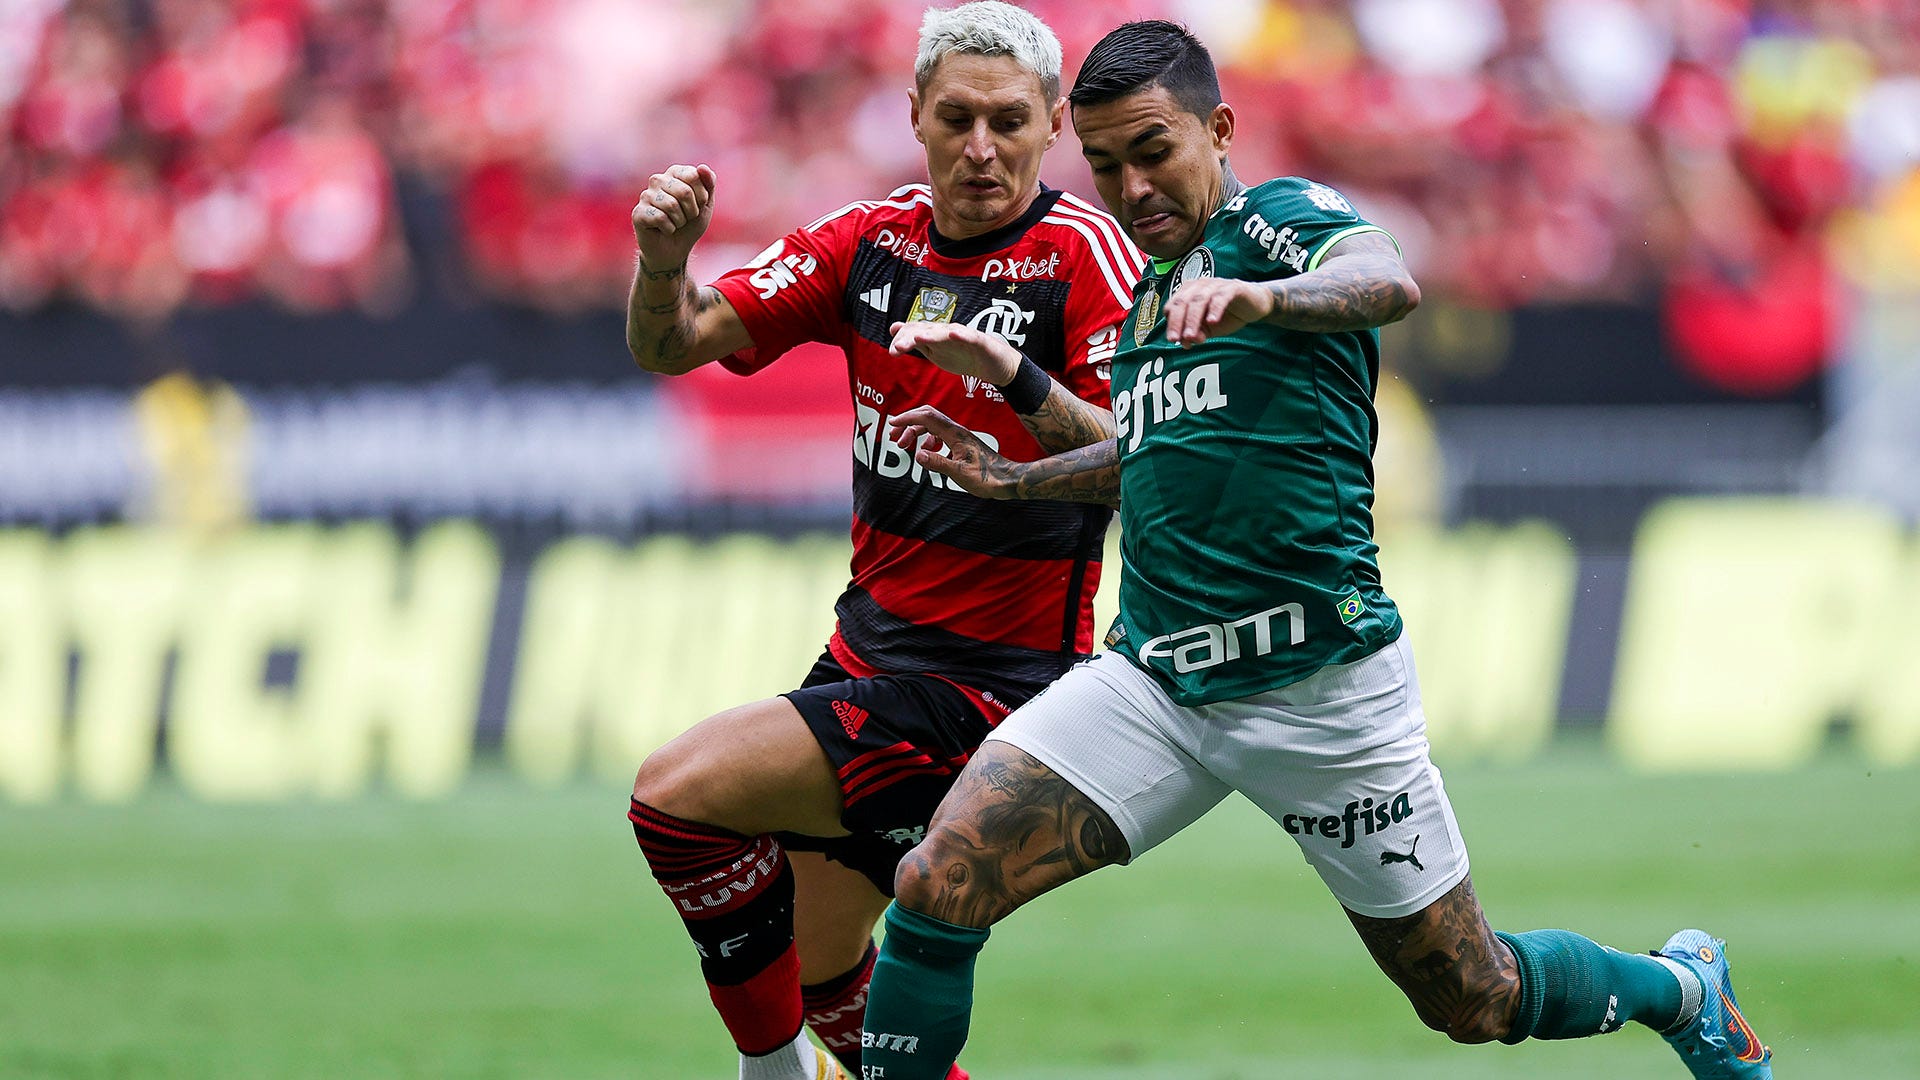 Brasileirão: como foram os últimos jogos entre Flamengo e Palmeiras?